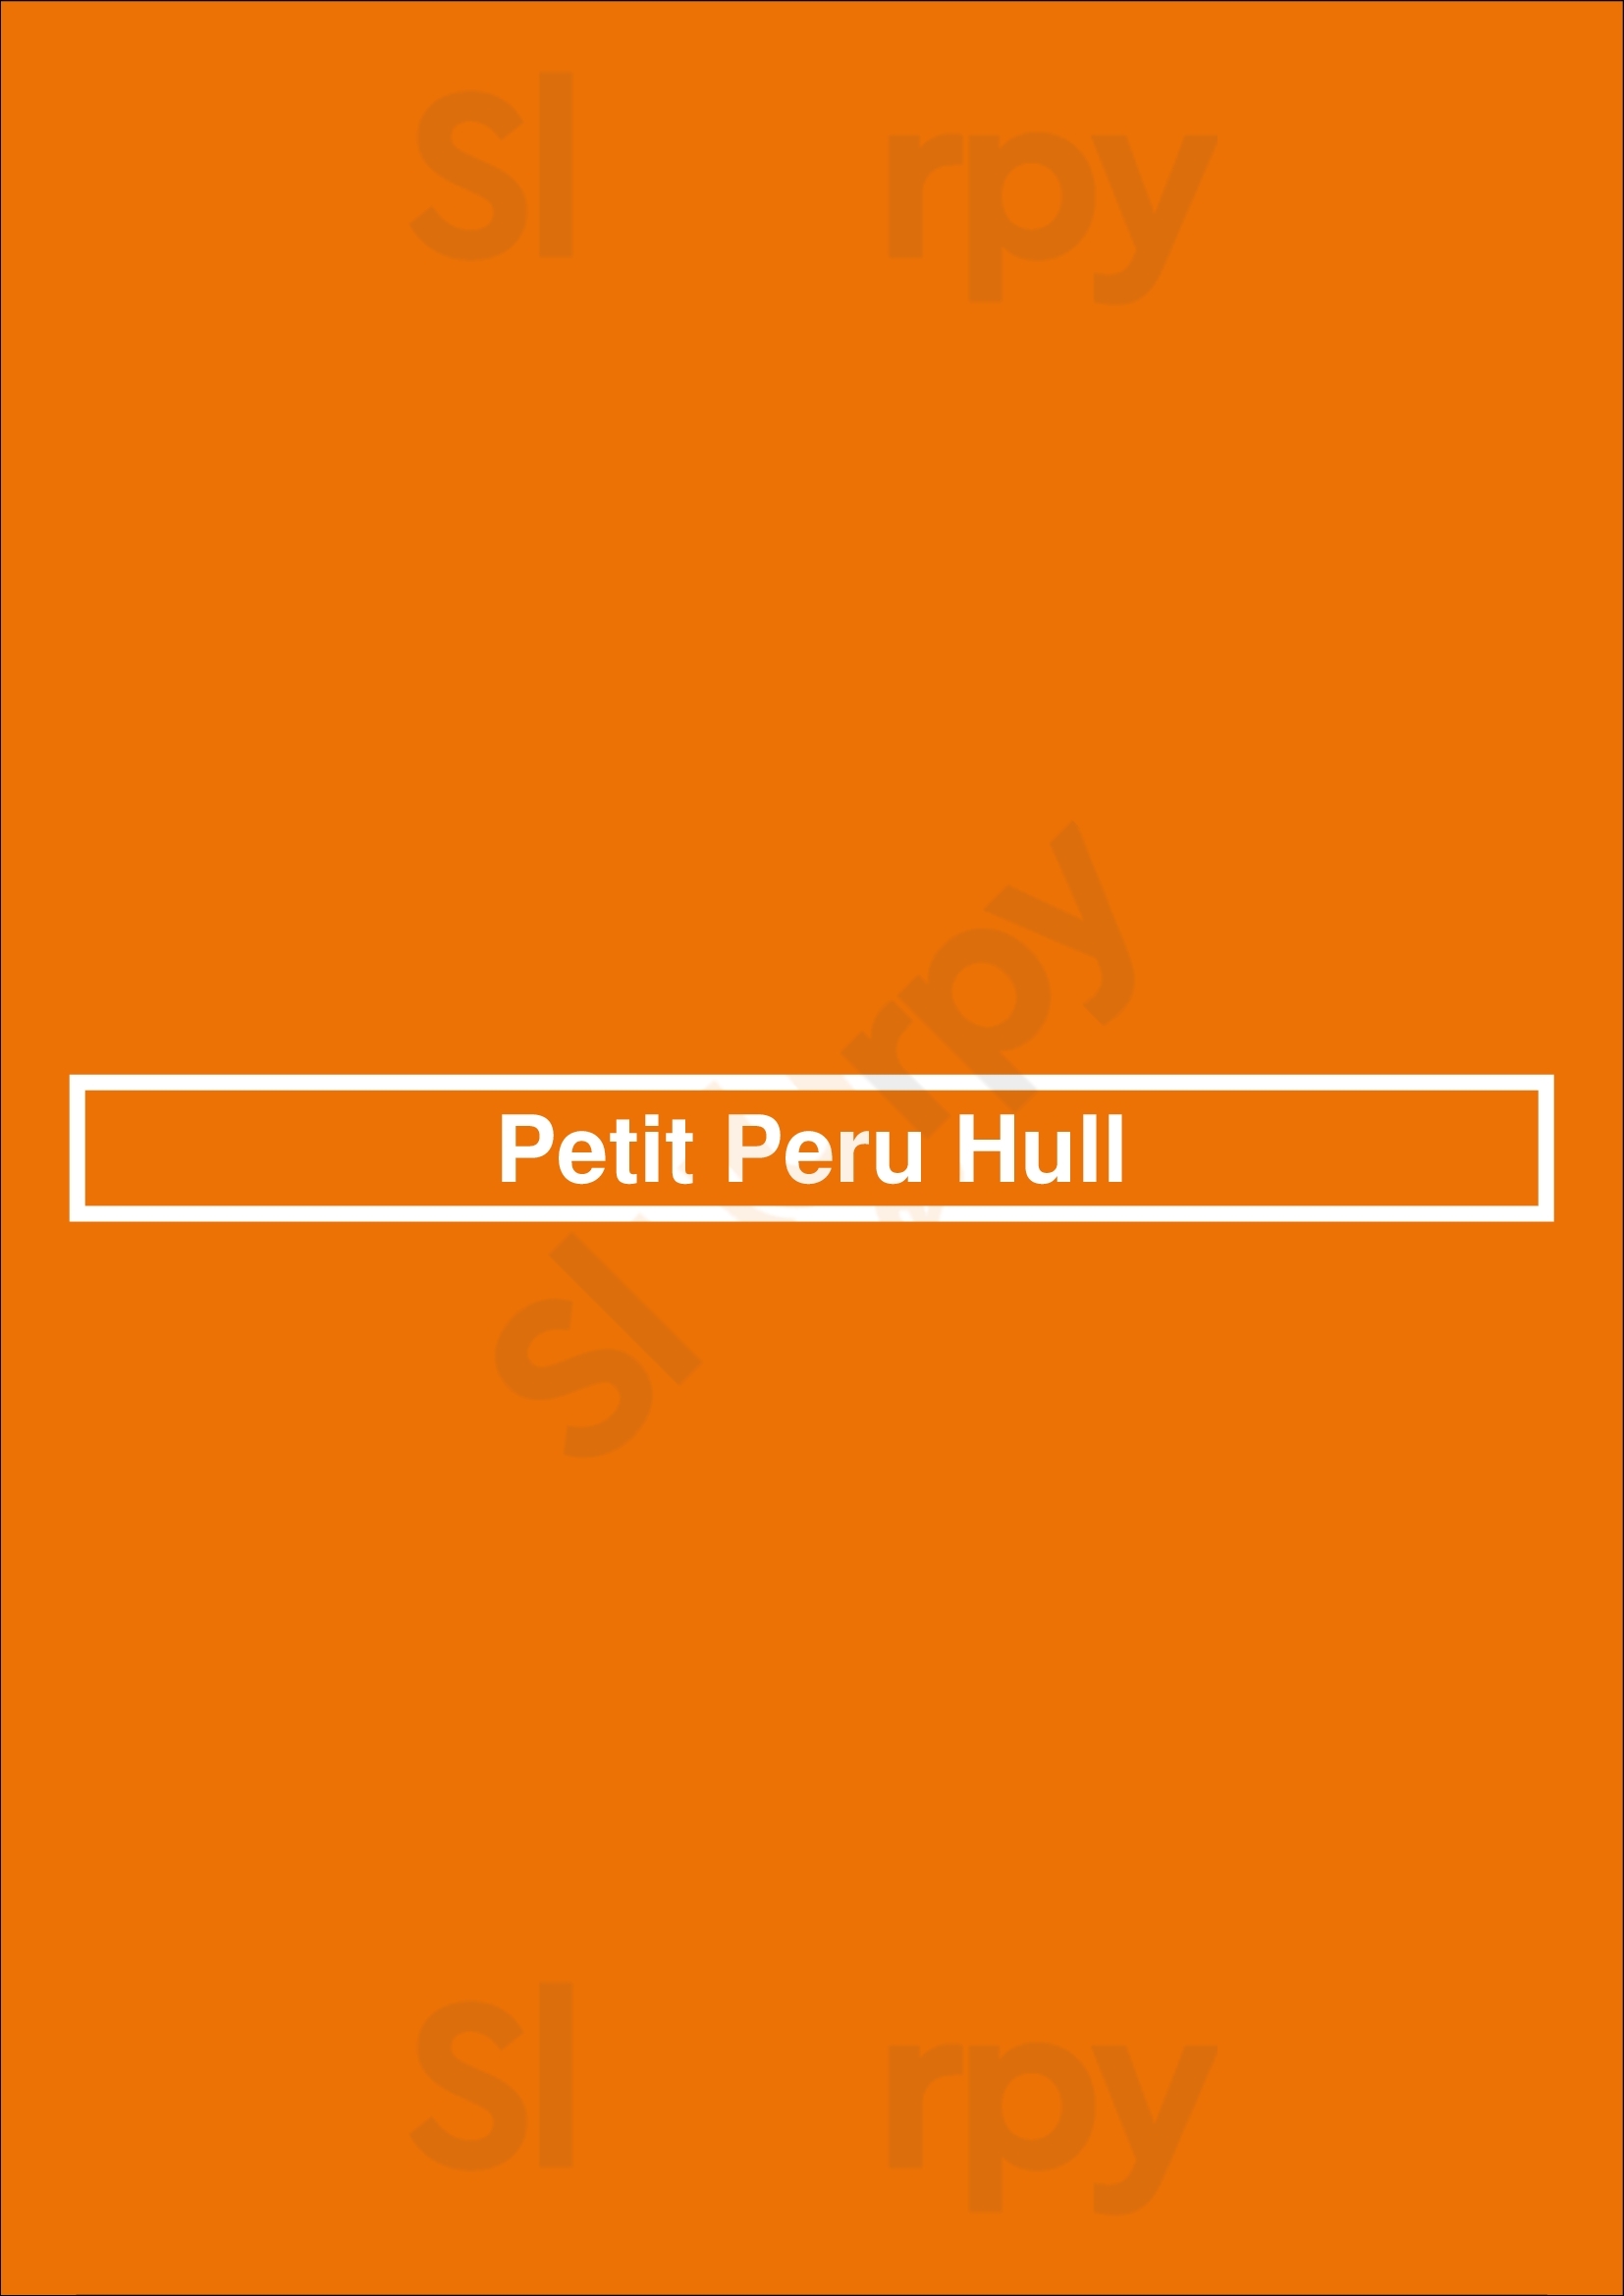 Petit Peru Hull Gatineau Menu - 1